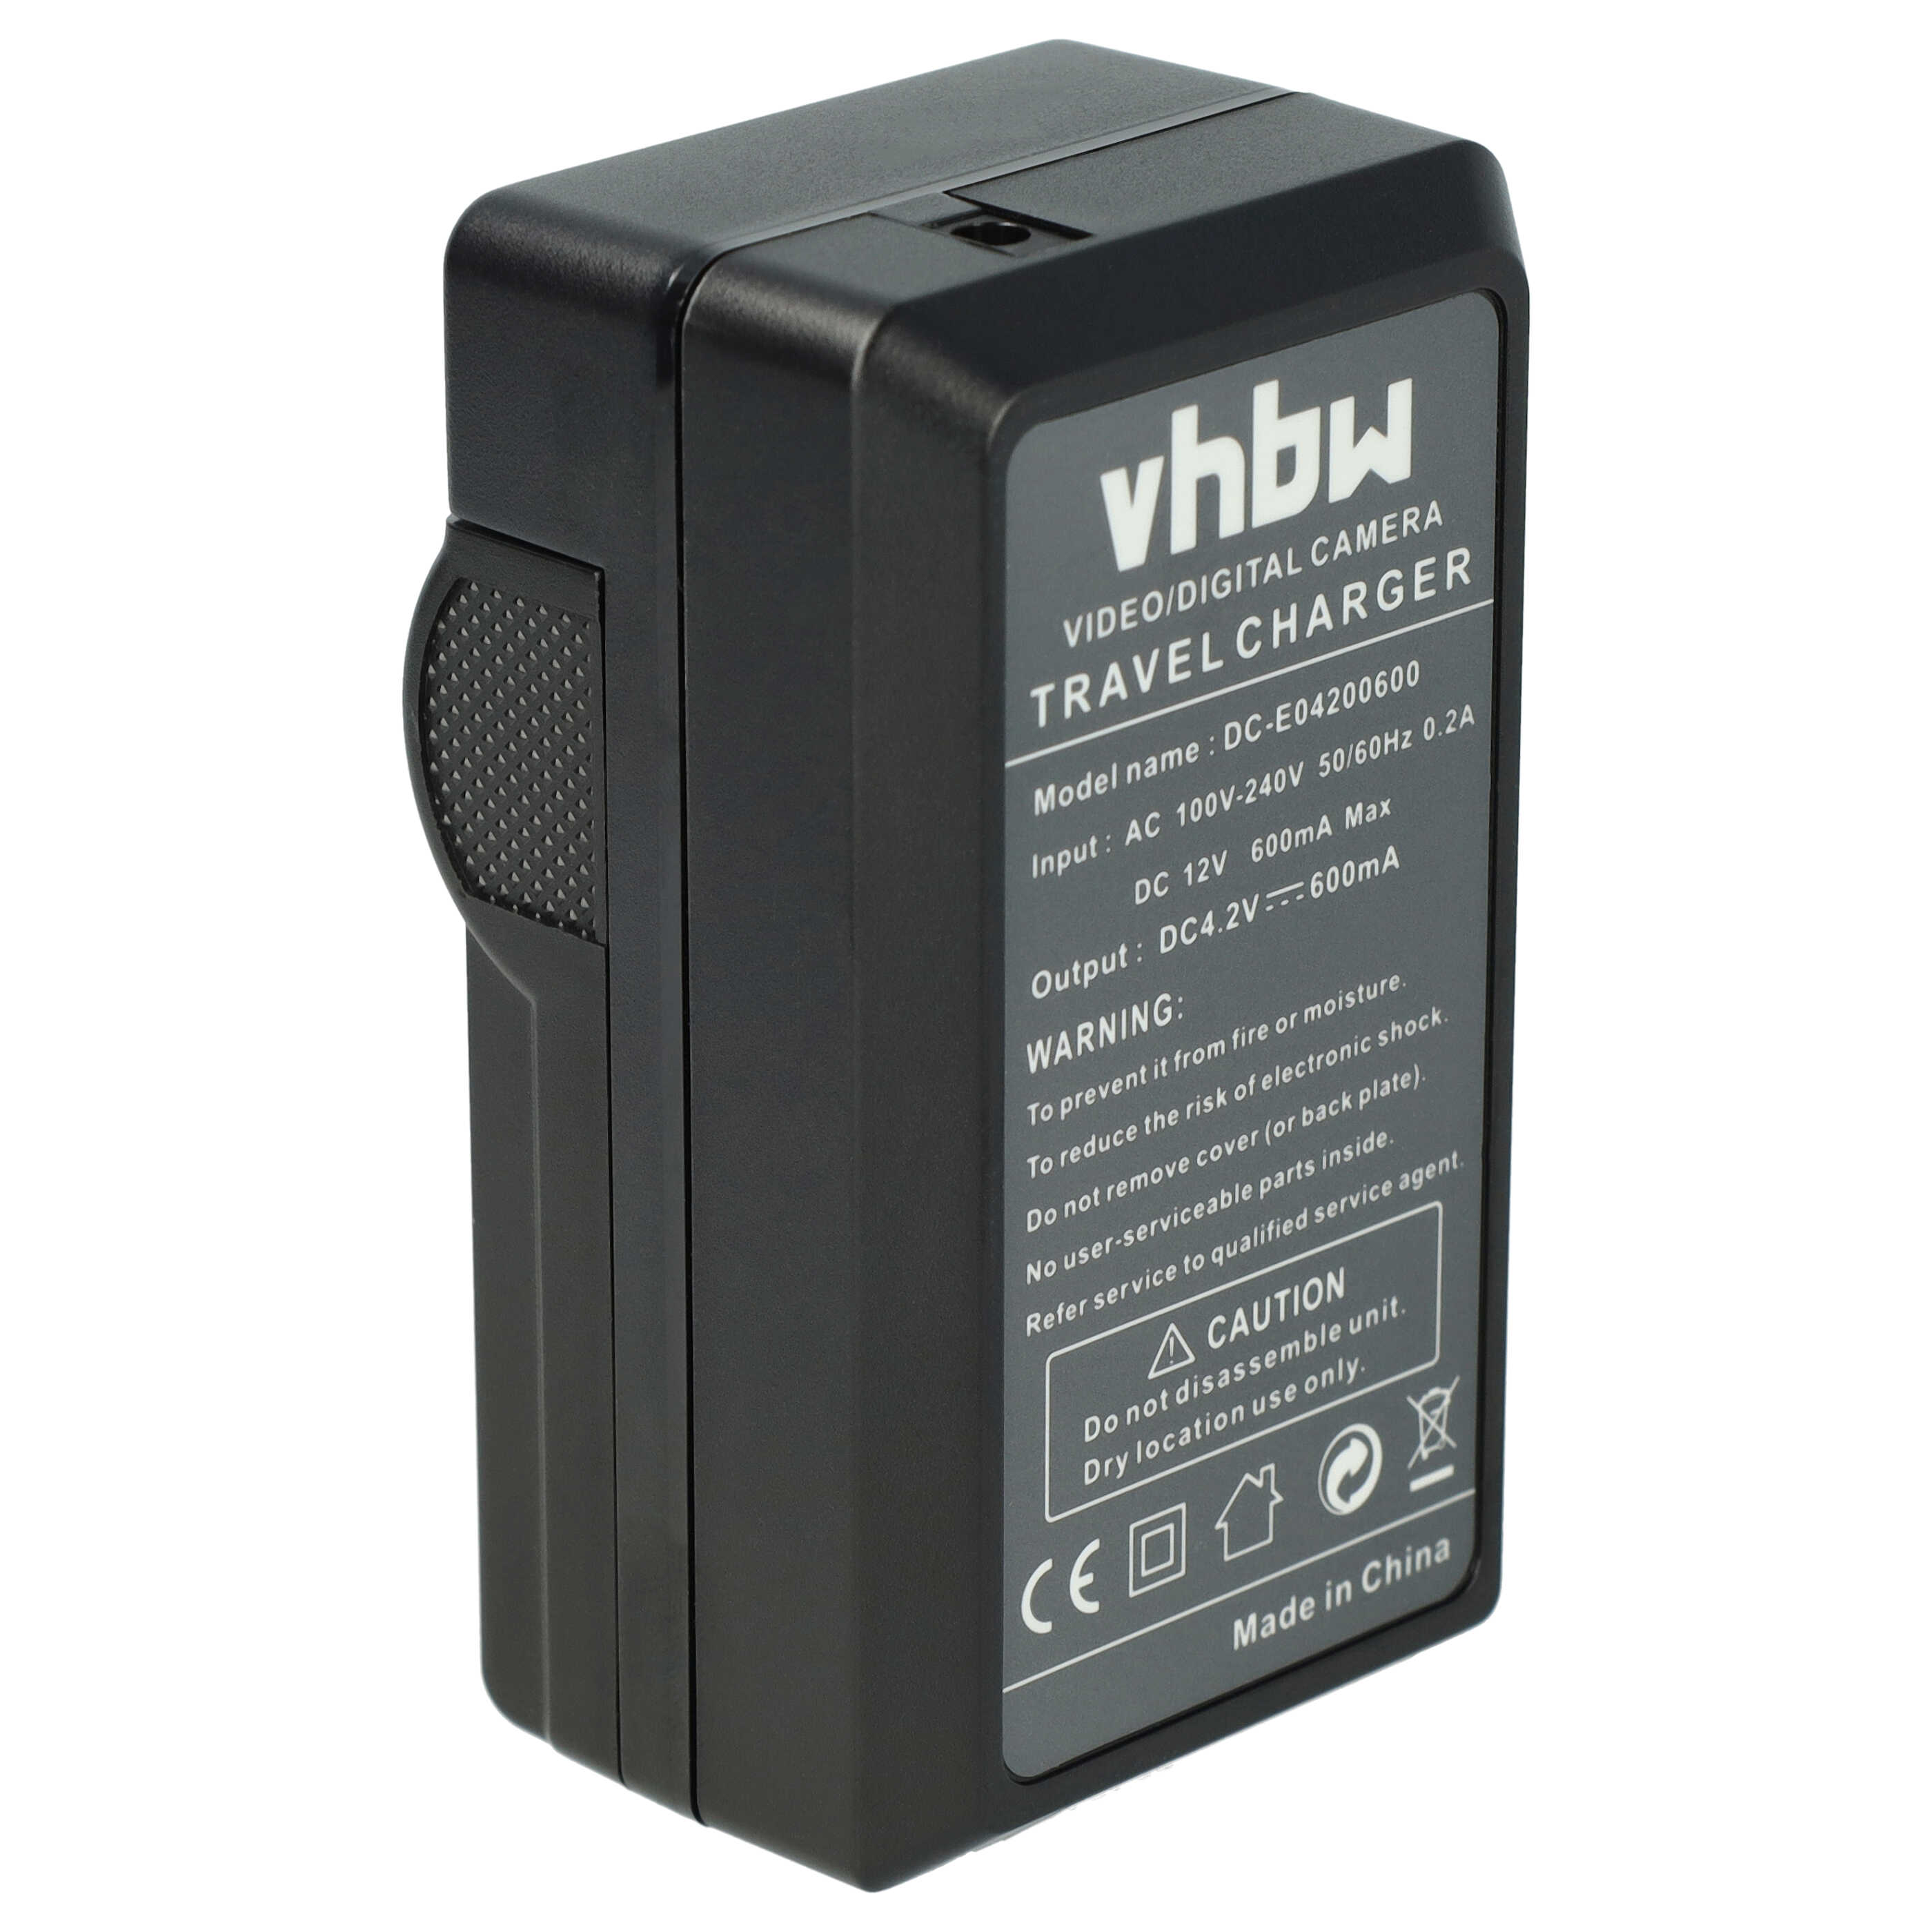 Caricabatterie + adattatore da auto per fotocamera Lumix - 0,6A 4,2V 88,5cm